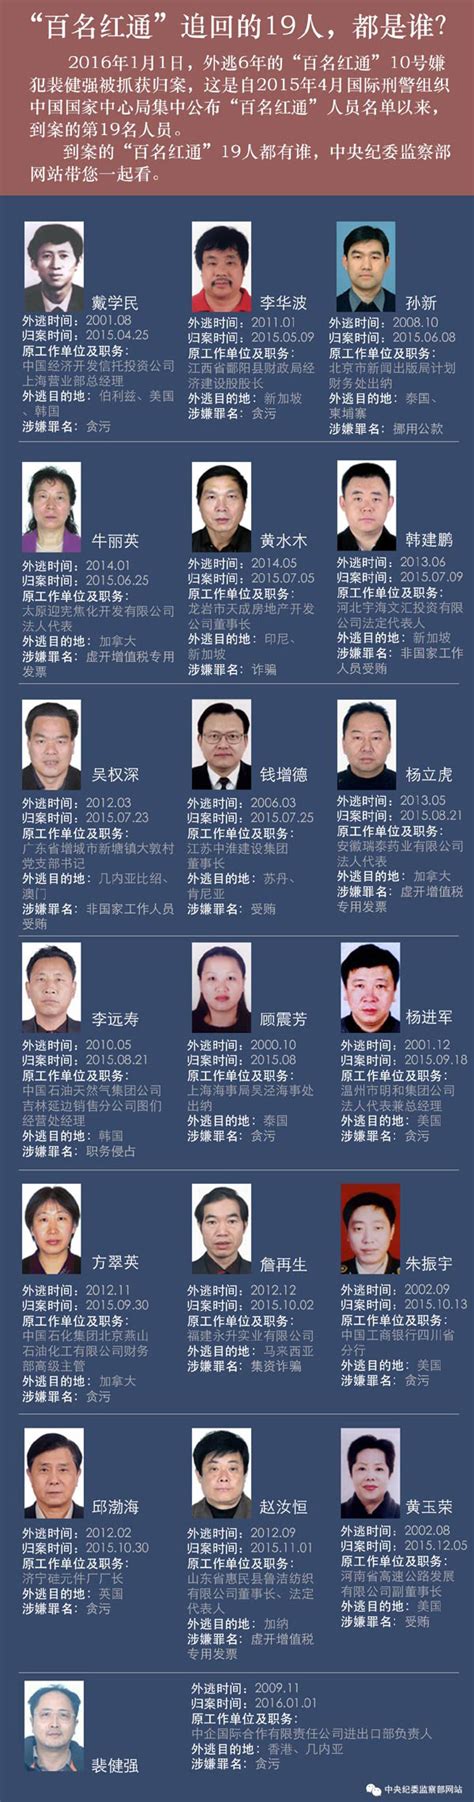 中纪委公示19名被追回"红通"名单信息(图)-国际在线